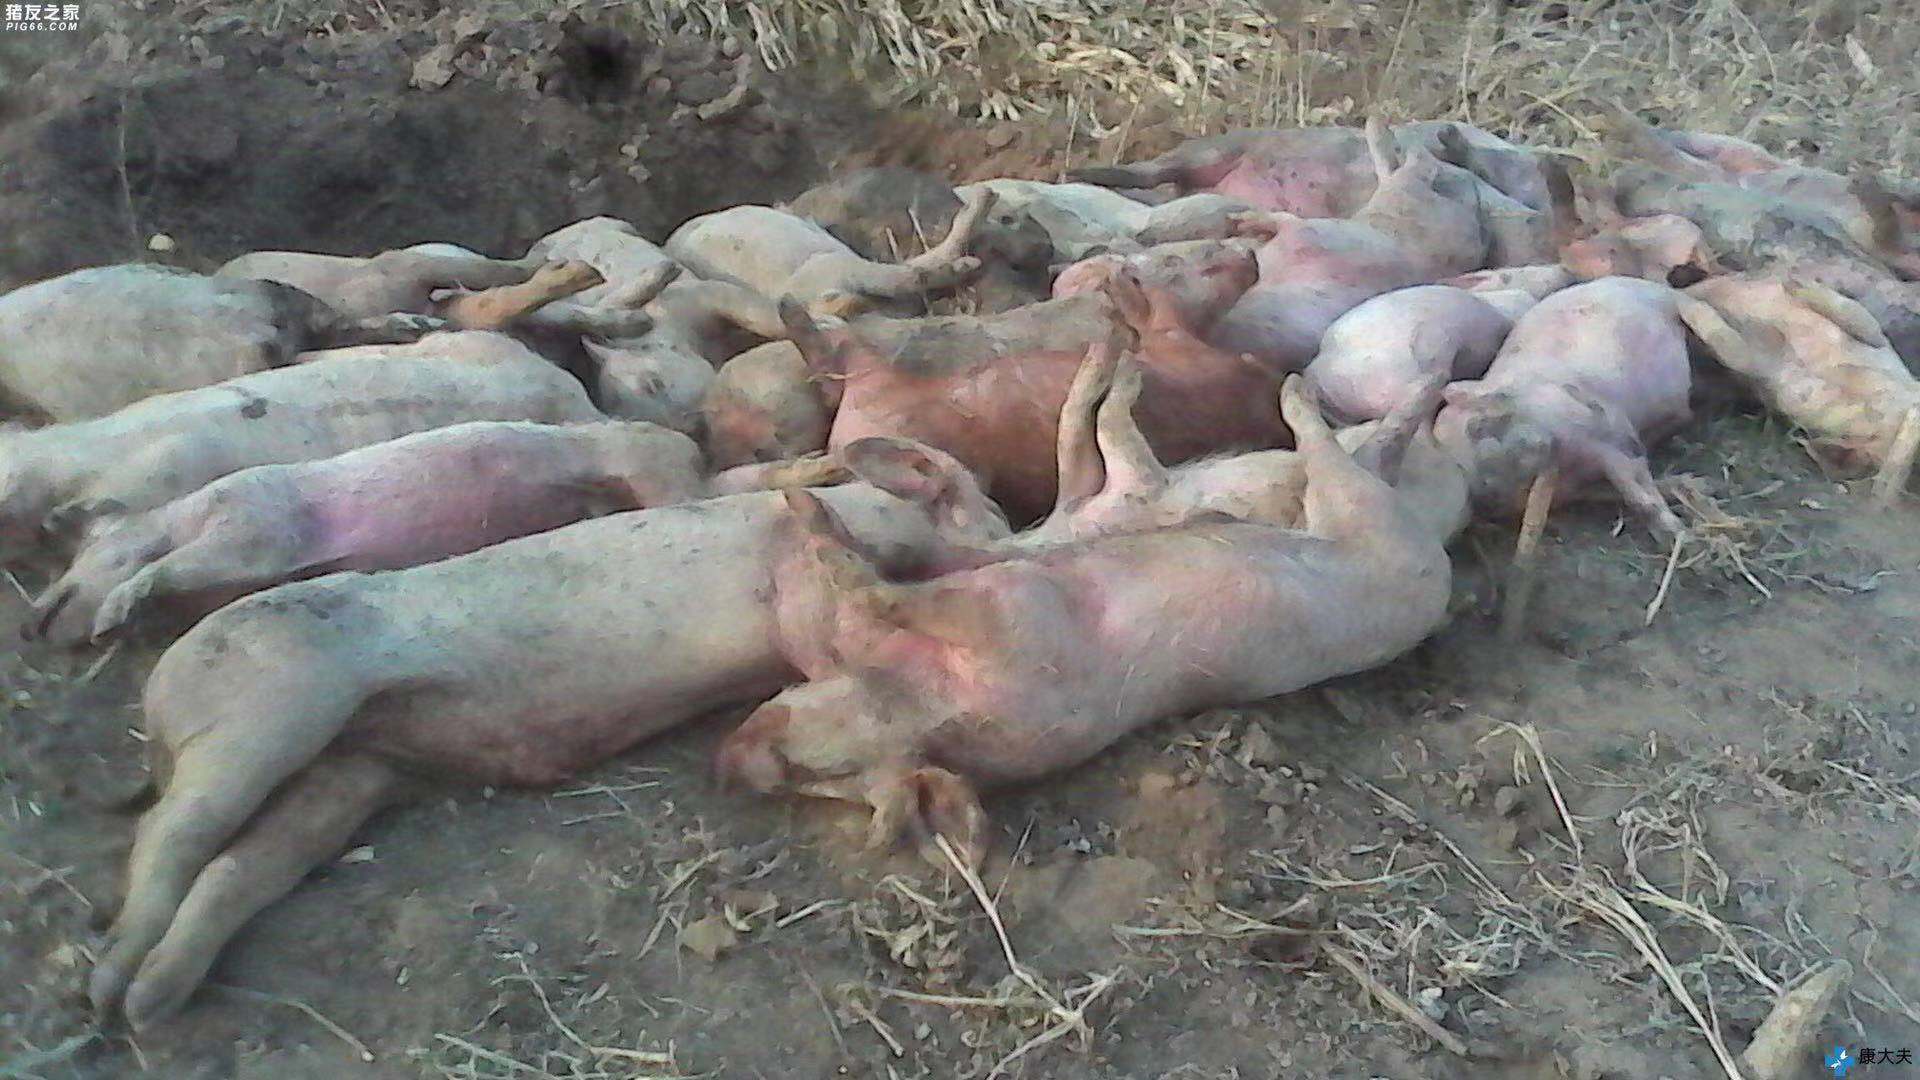 泽州发现非洲猪瘟 县政府发布疫区封锁令